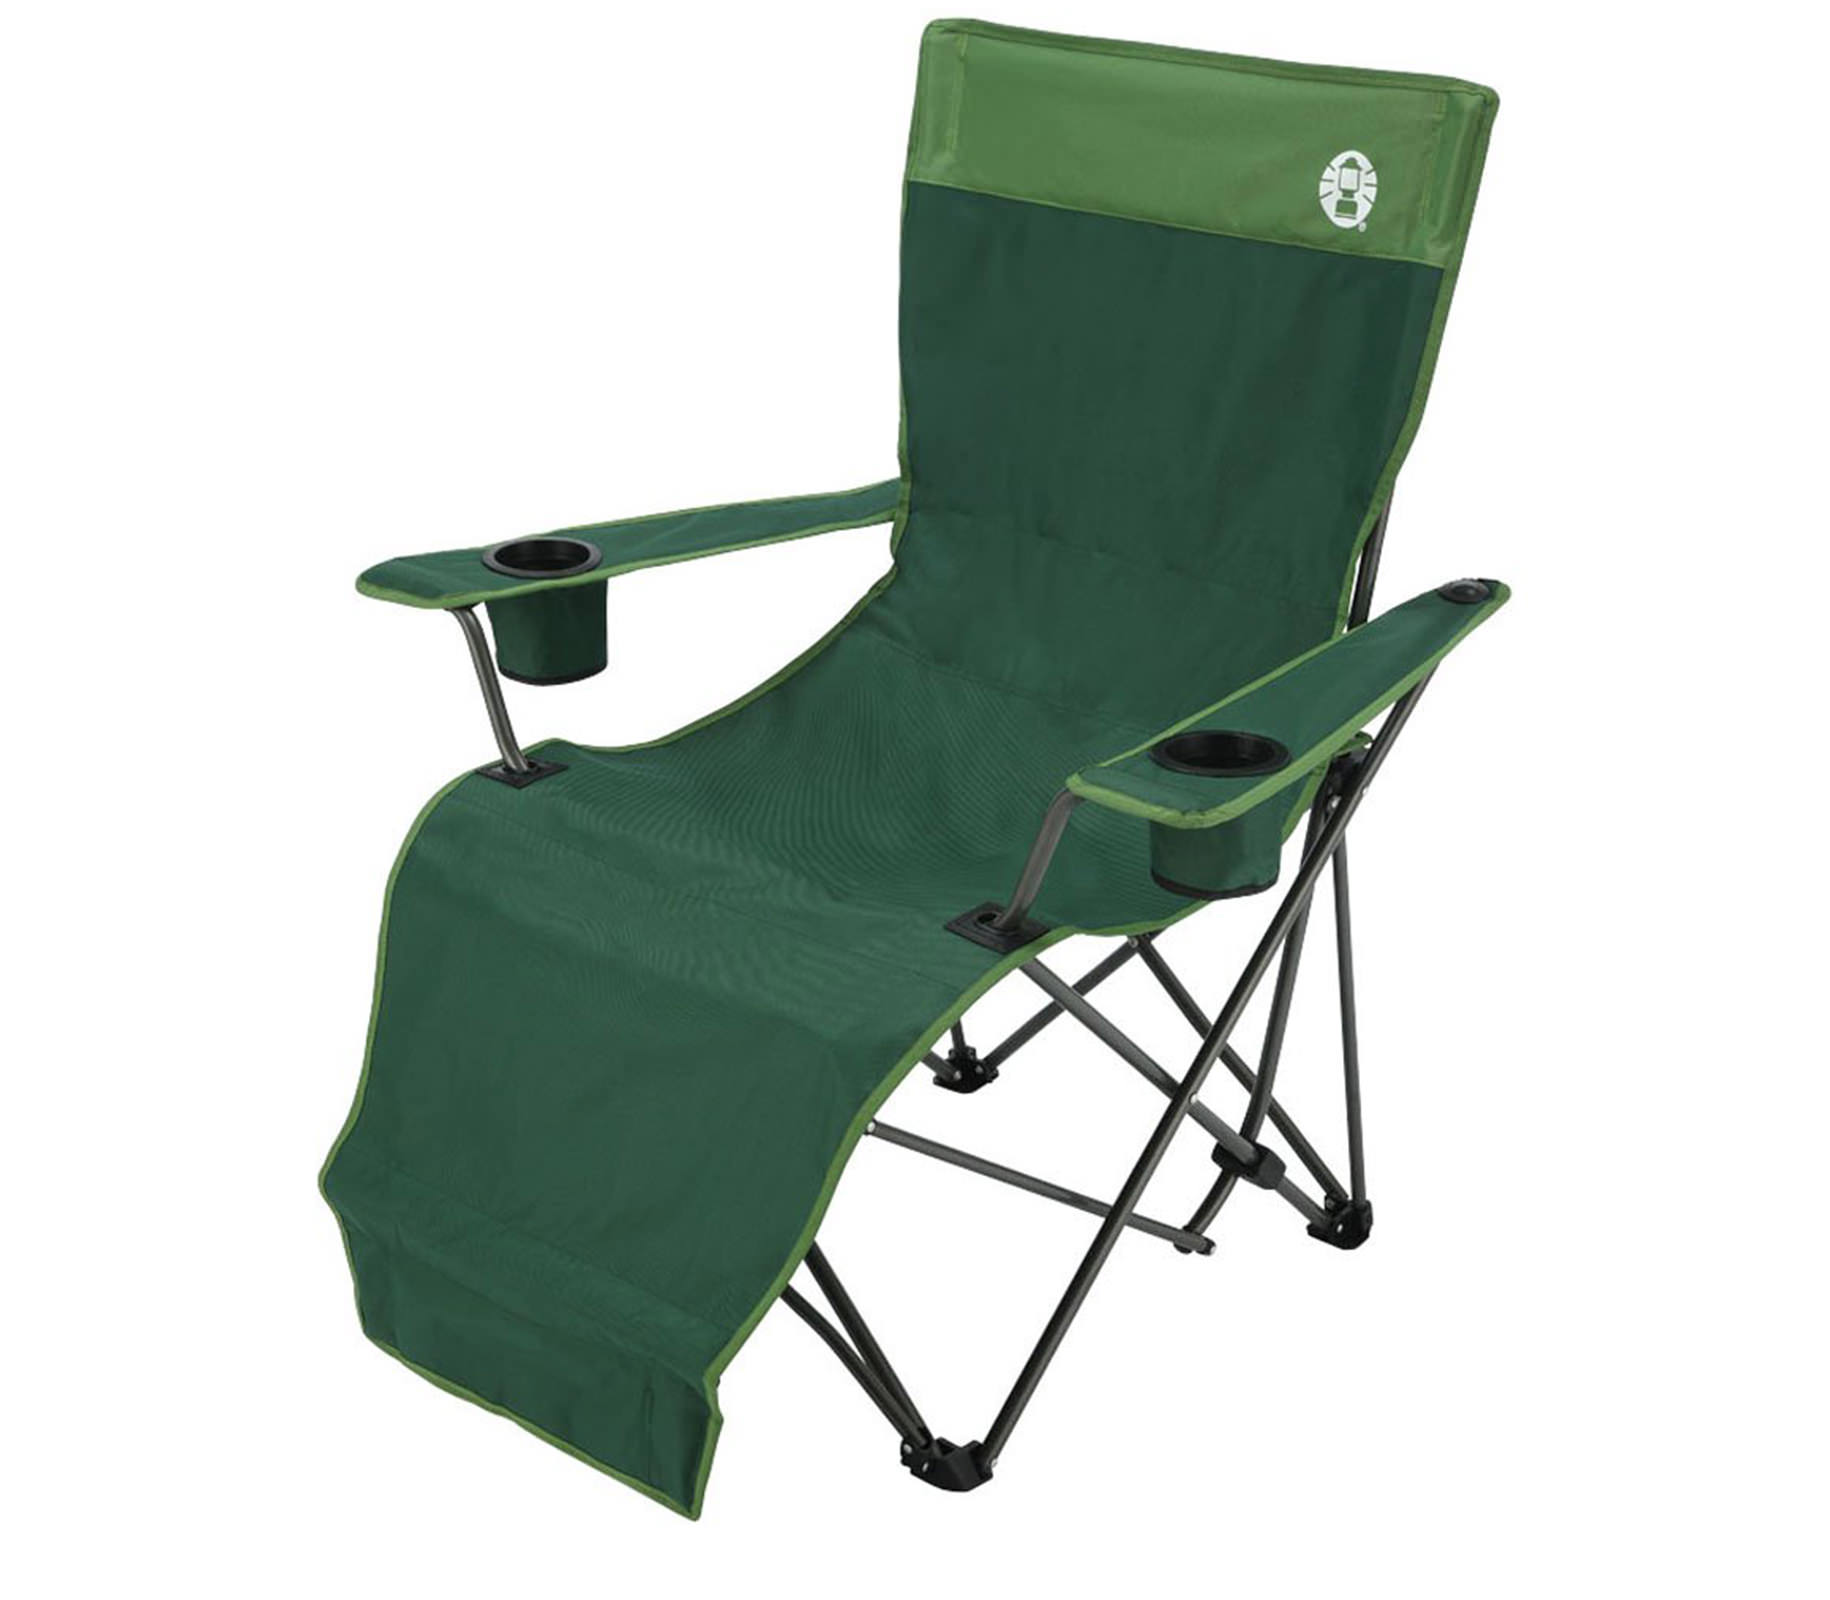 ghe-gap-coleman-easy-lift-chair-steel-green-2000010499-7460-wetrek_vn